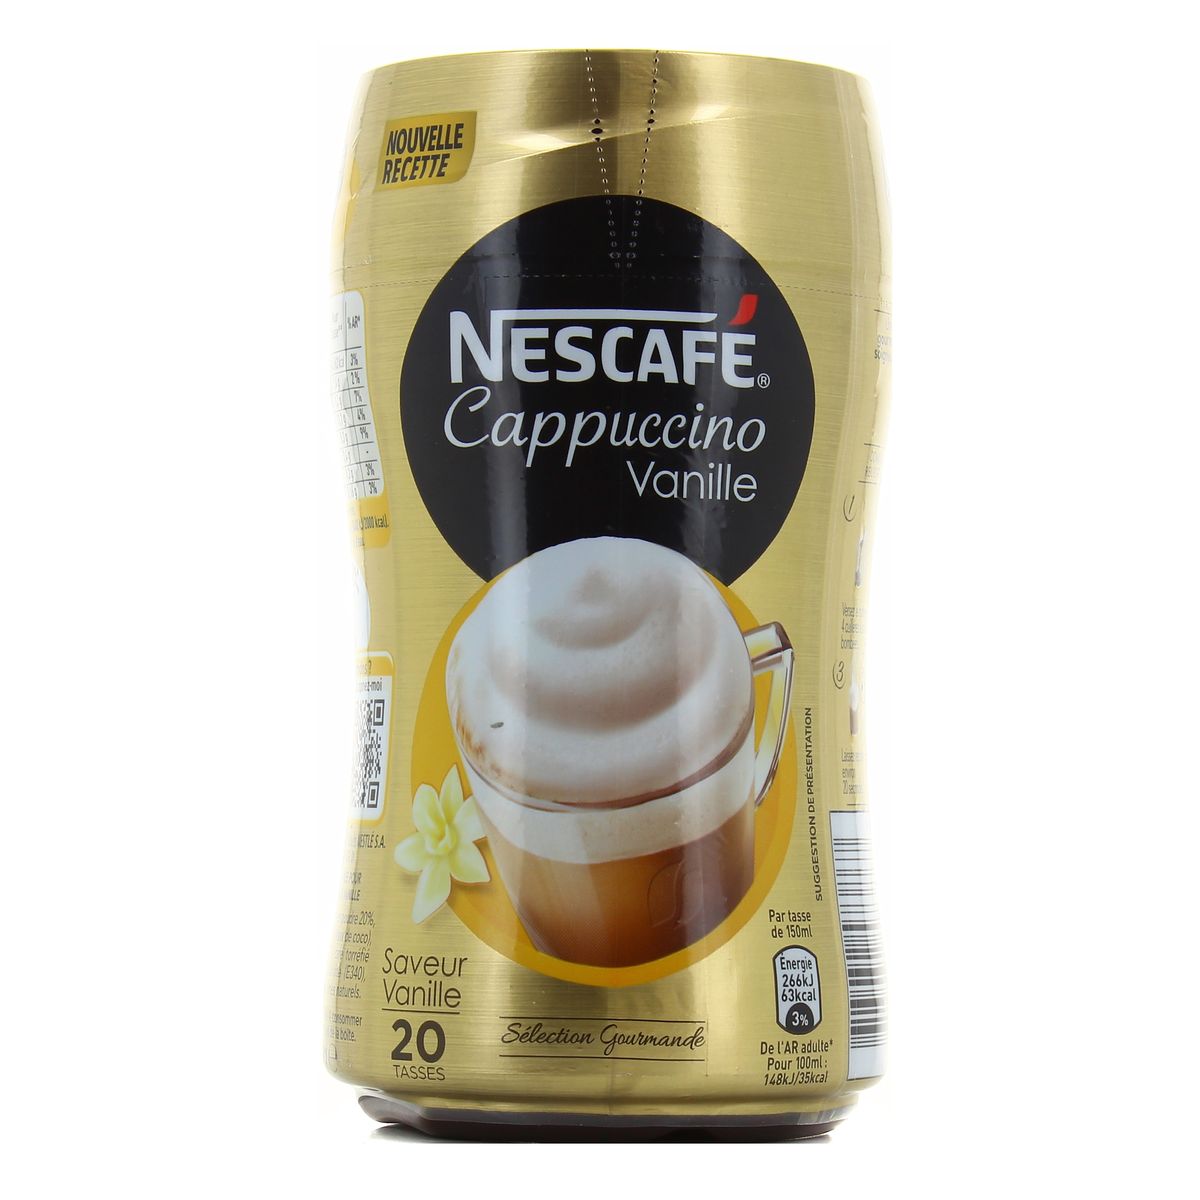 Nescafé Cappuccino Vanille, Café soluble, Boîte 310g - Lot de 5 Boîtes :  : Epicerie